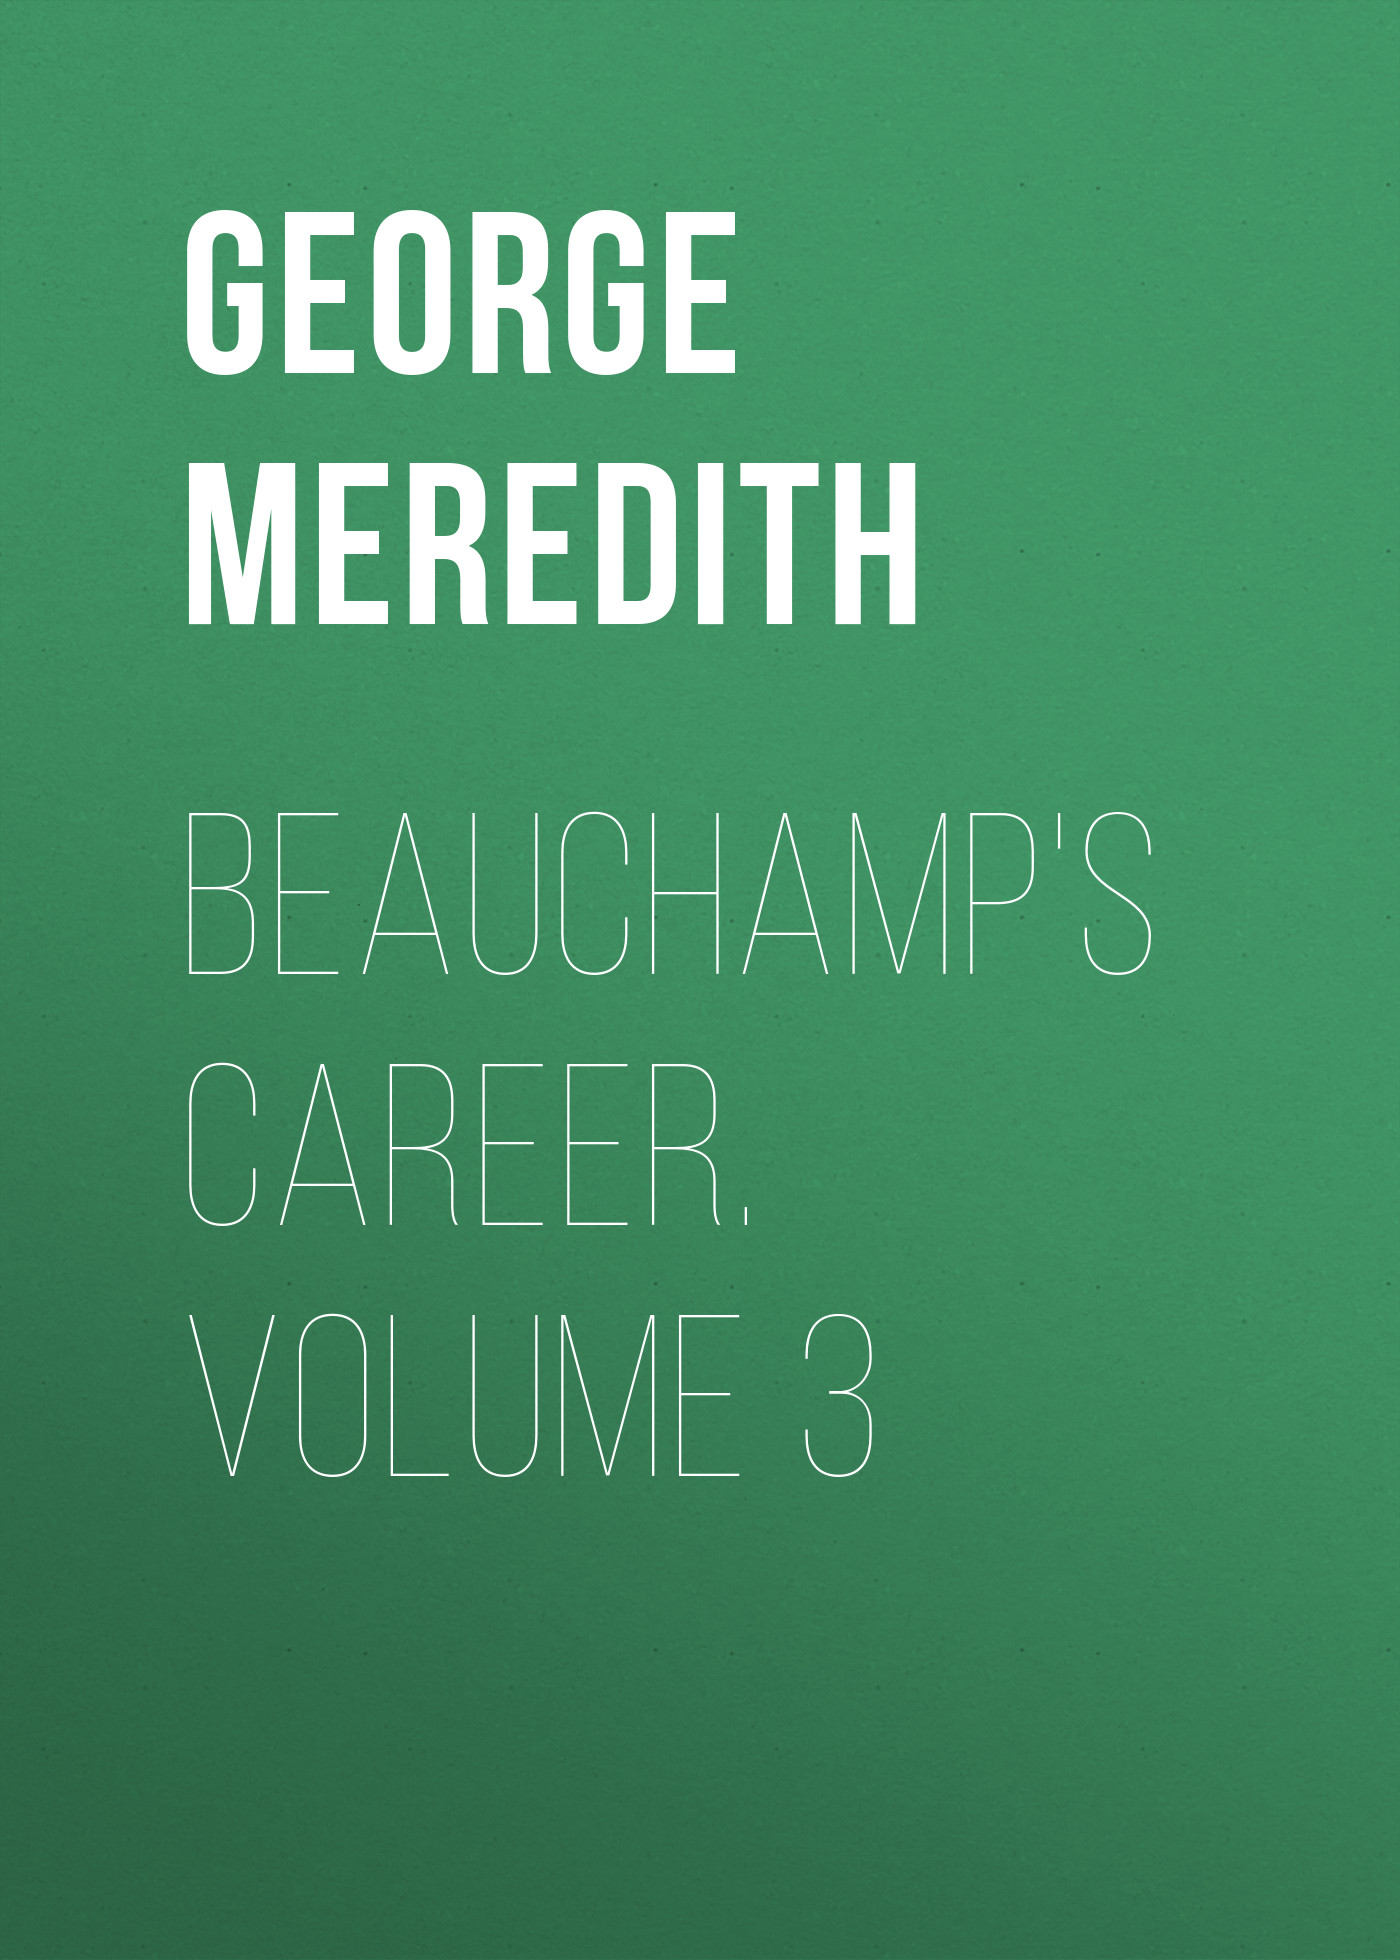 Книга Beauchamp's Career. Volume 3 из серии , созданная George Meredith, может относится к жанру Зарубежная классика, Литература 19 века, Зарубежная старинная литература. Стоимость электронной книги Beauchamp's Career. Volume 3 с идентификатором 36096301 составляет 0 руб.